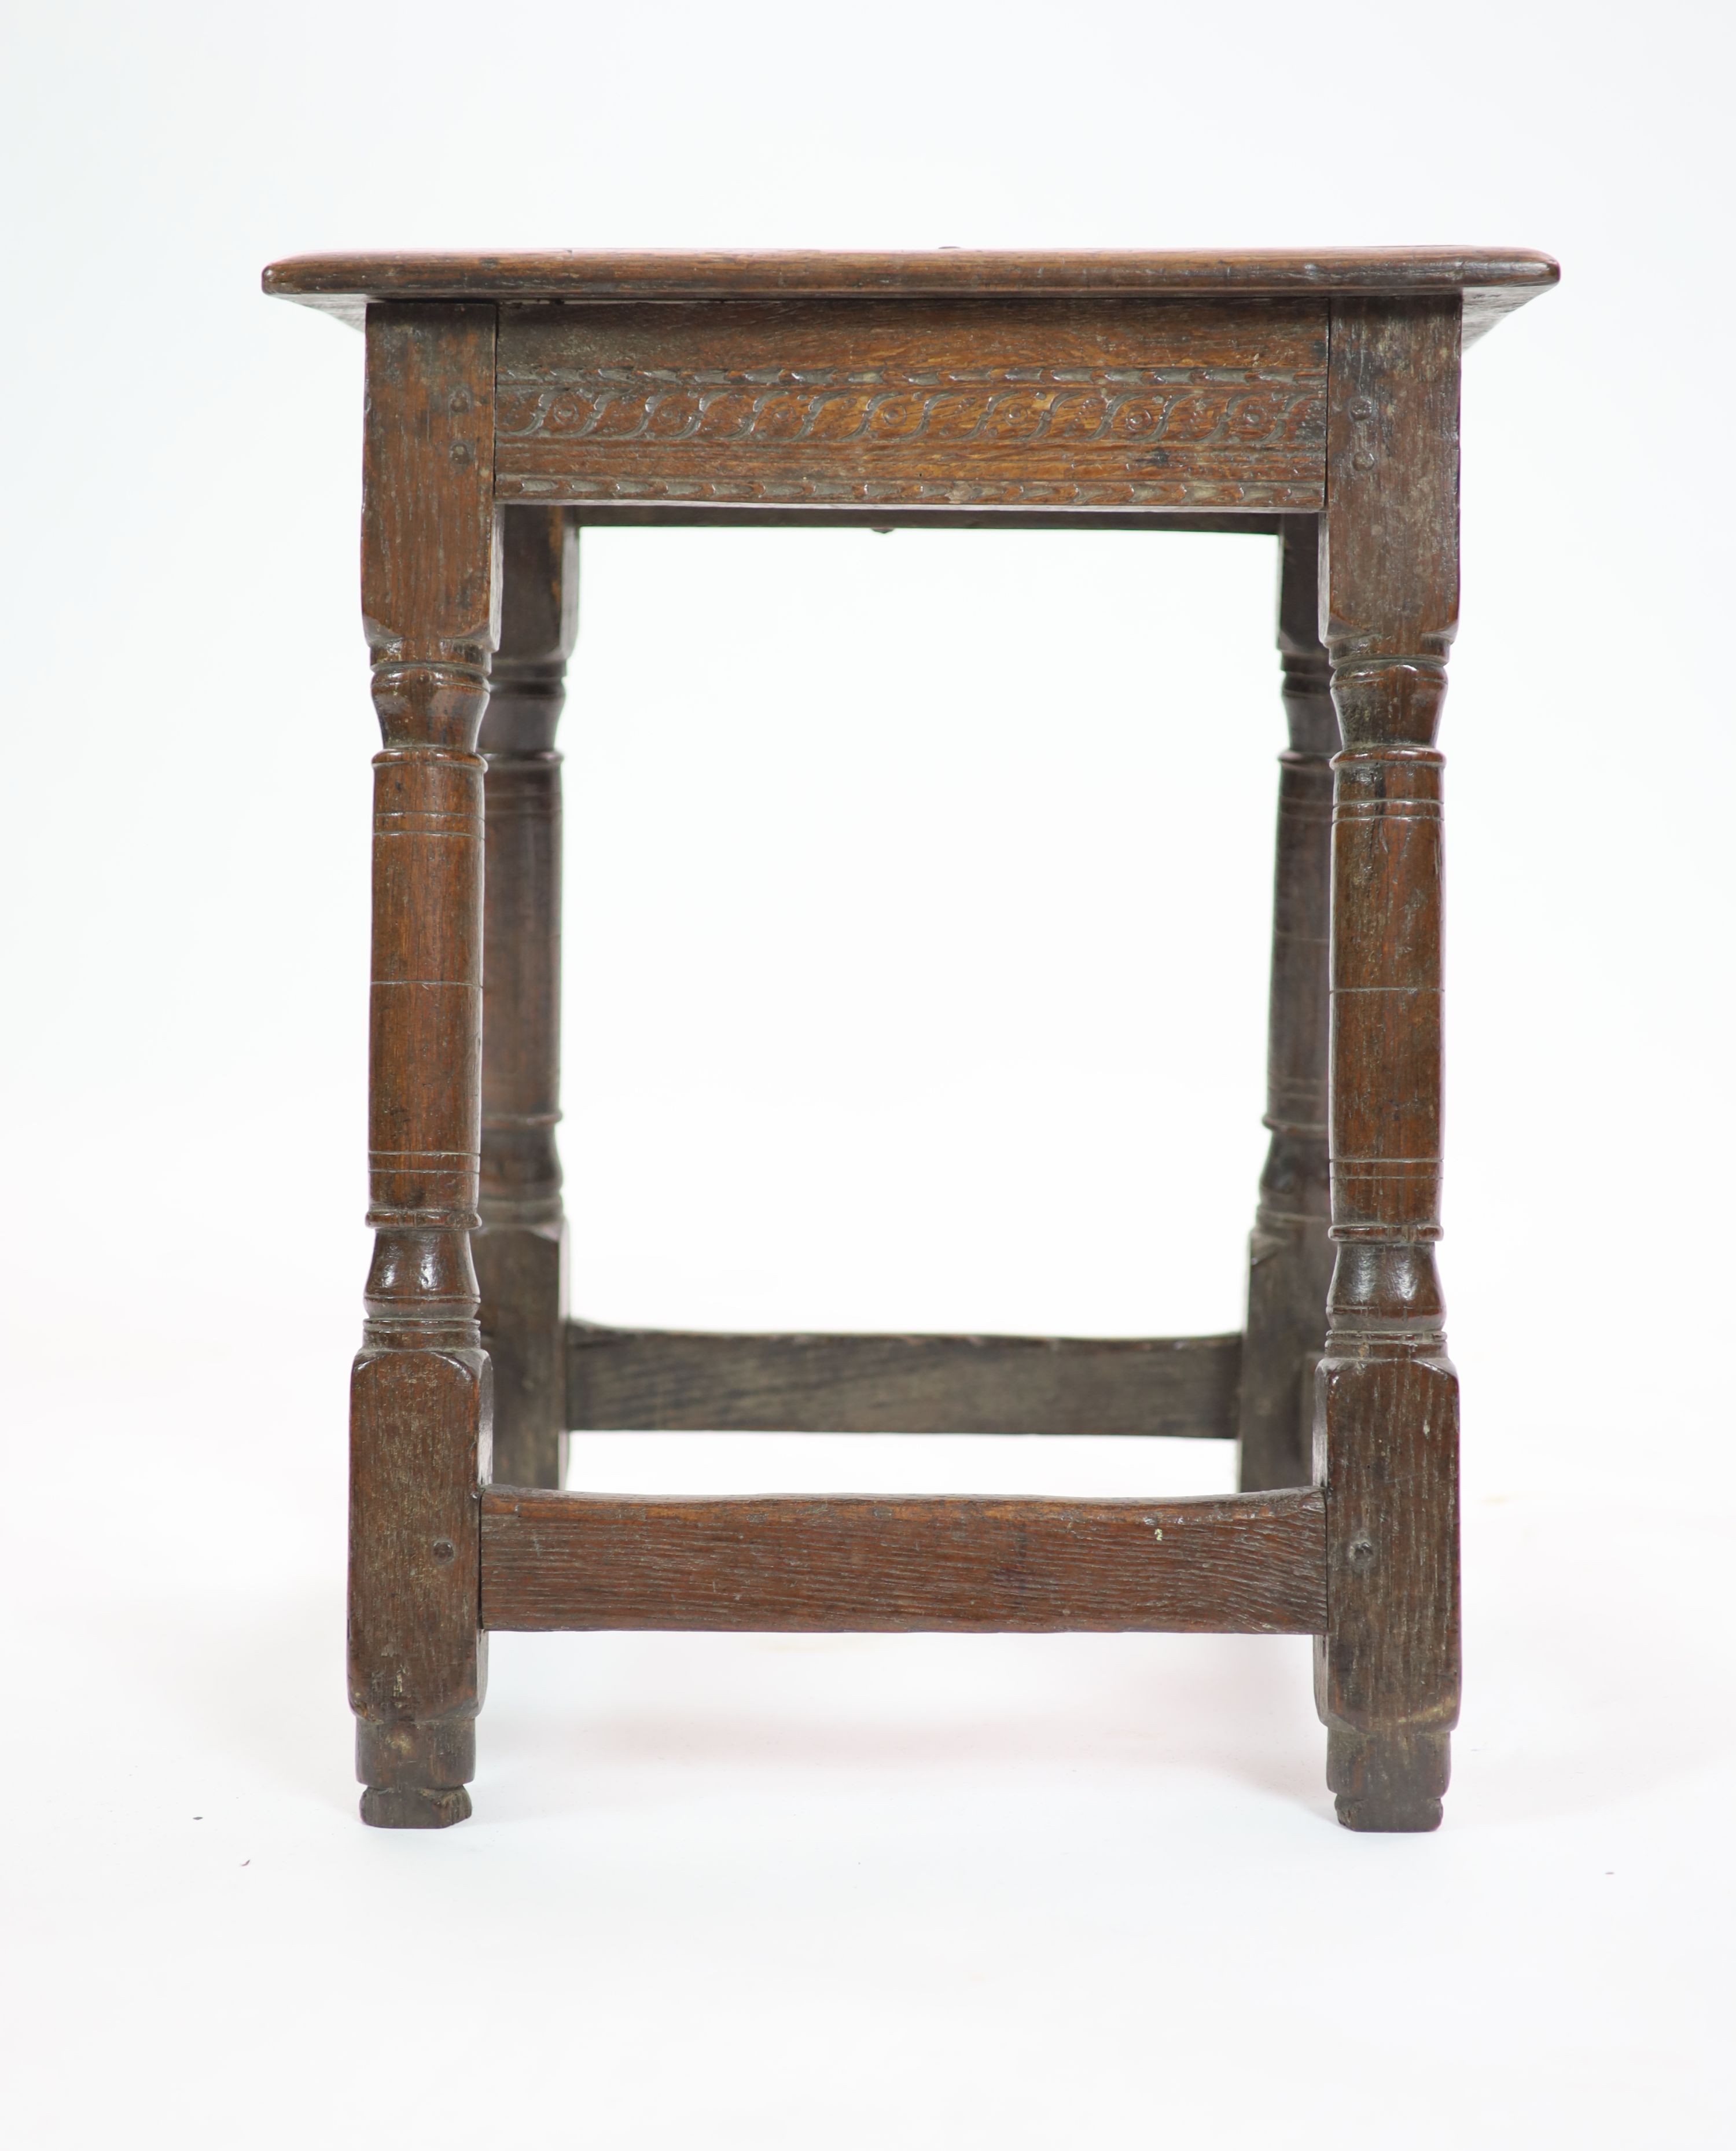 A mid-17th century oak joint stool H 58cm. W 48cm. D 30cm.